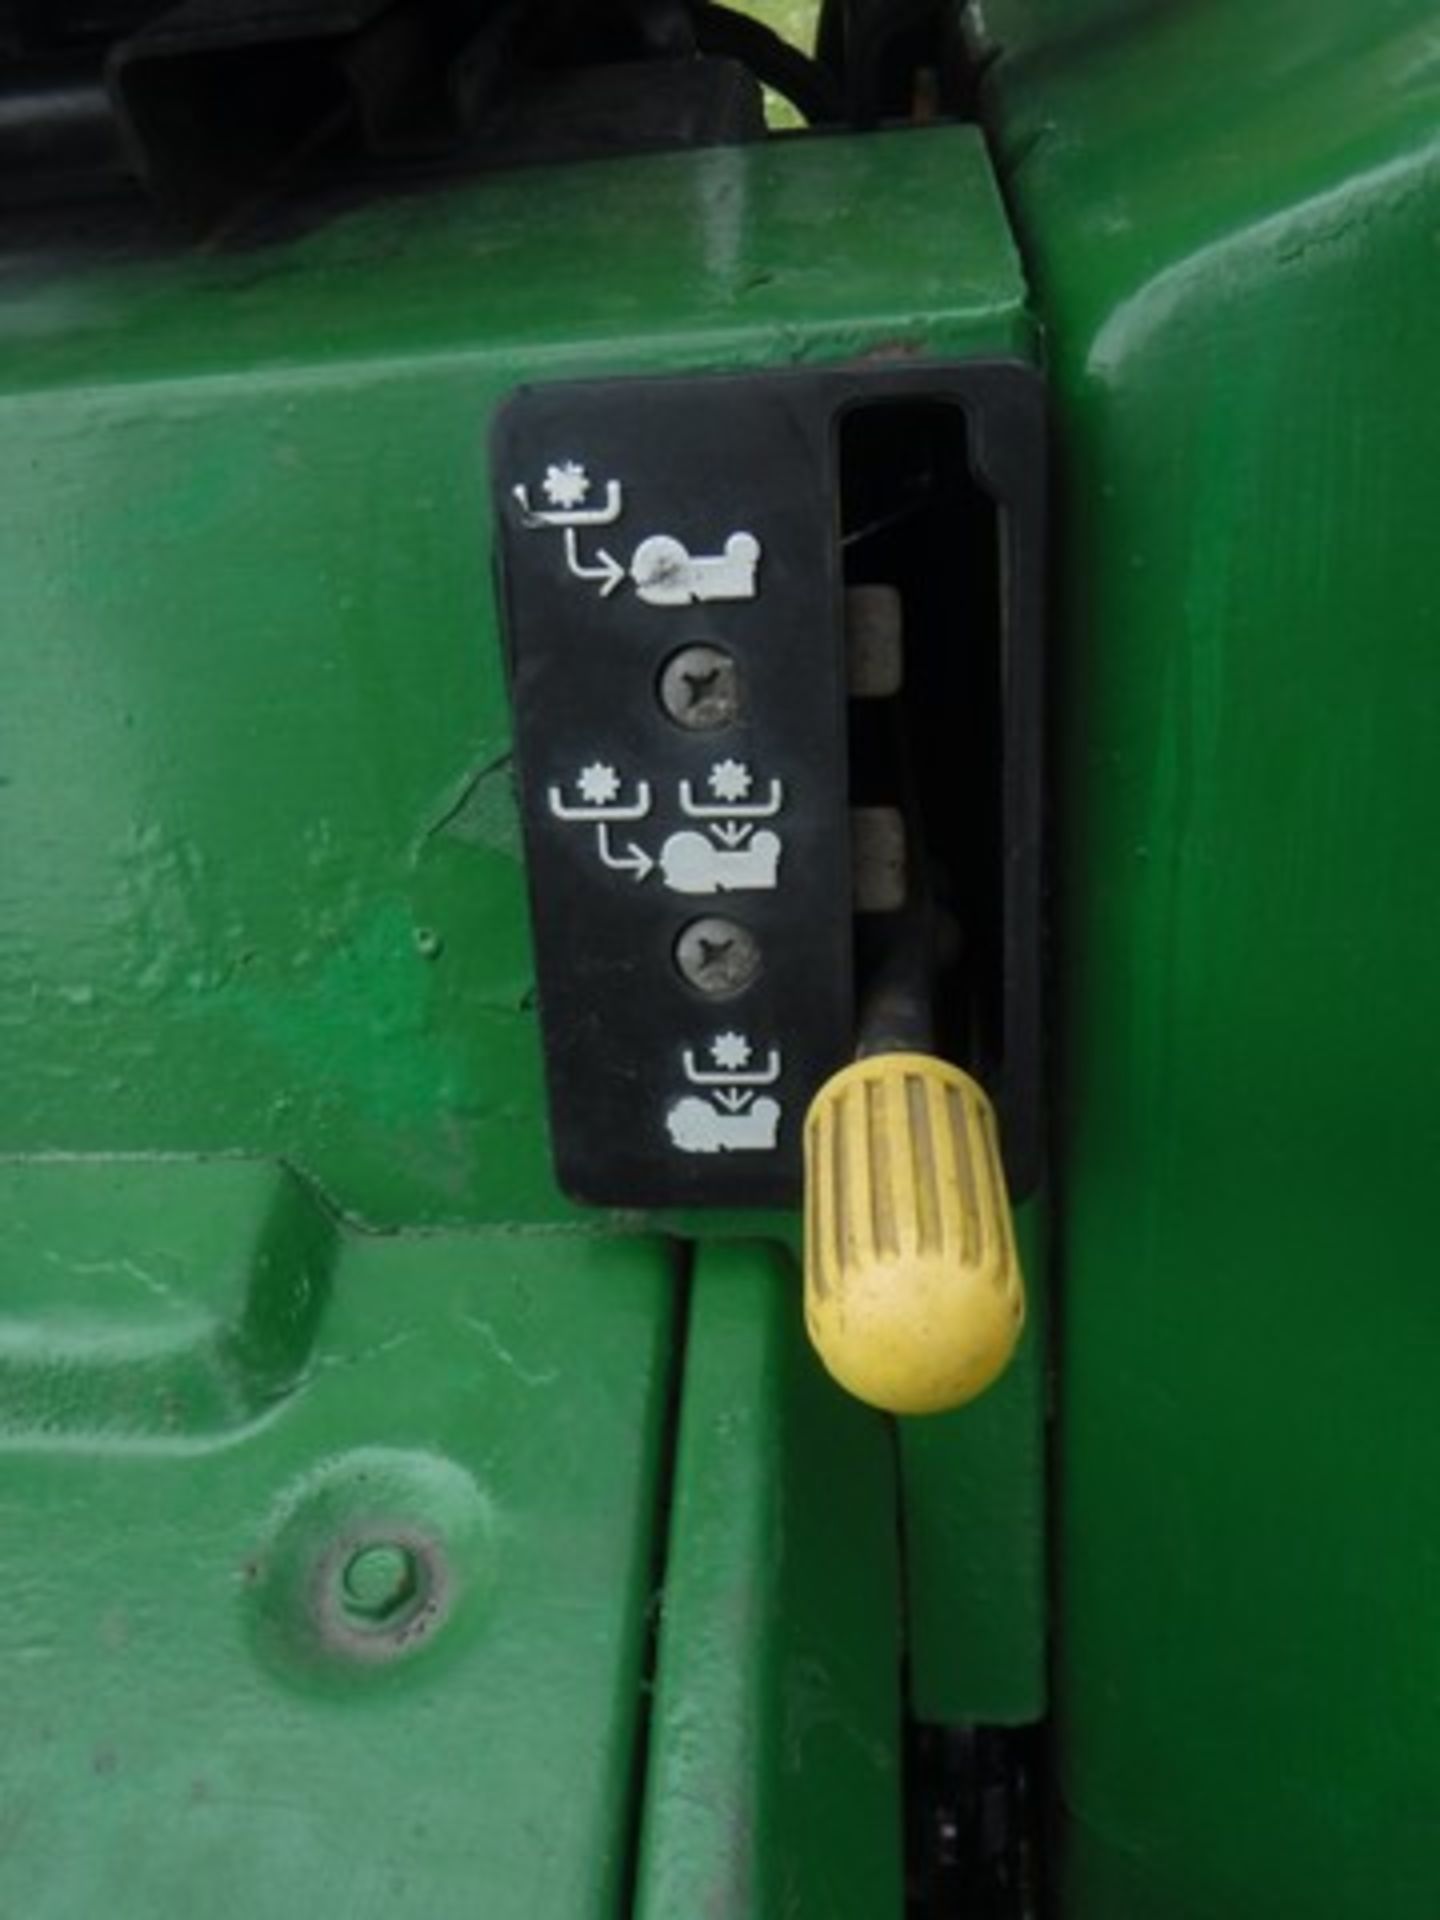 JOHN DEERE 4 x 4 Tractor 755. Reg - H97FBJ. 1003hrs (not verified) - Image 4 of 15